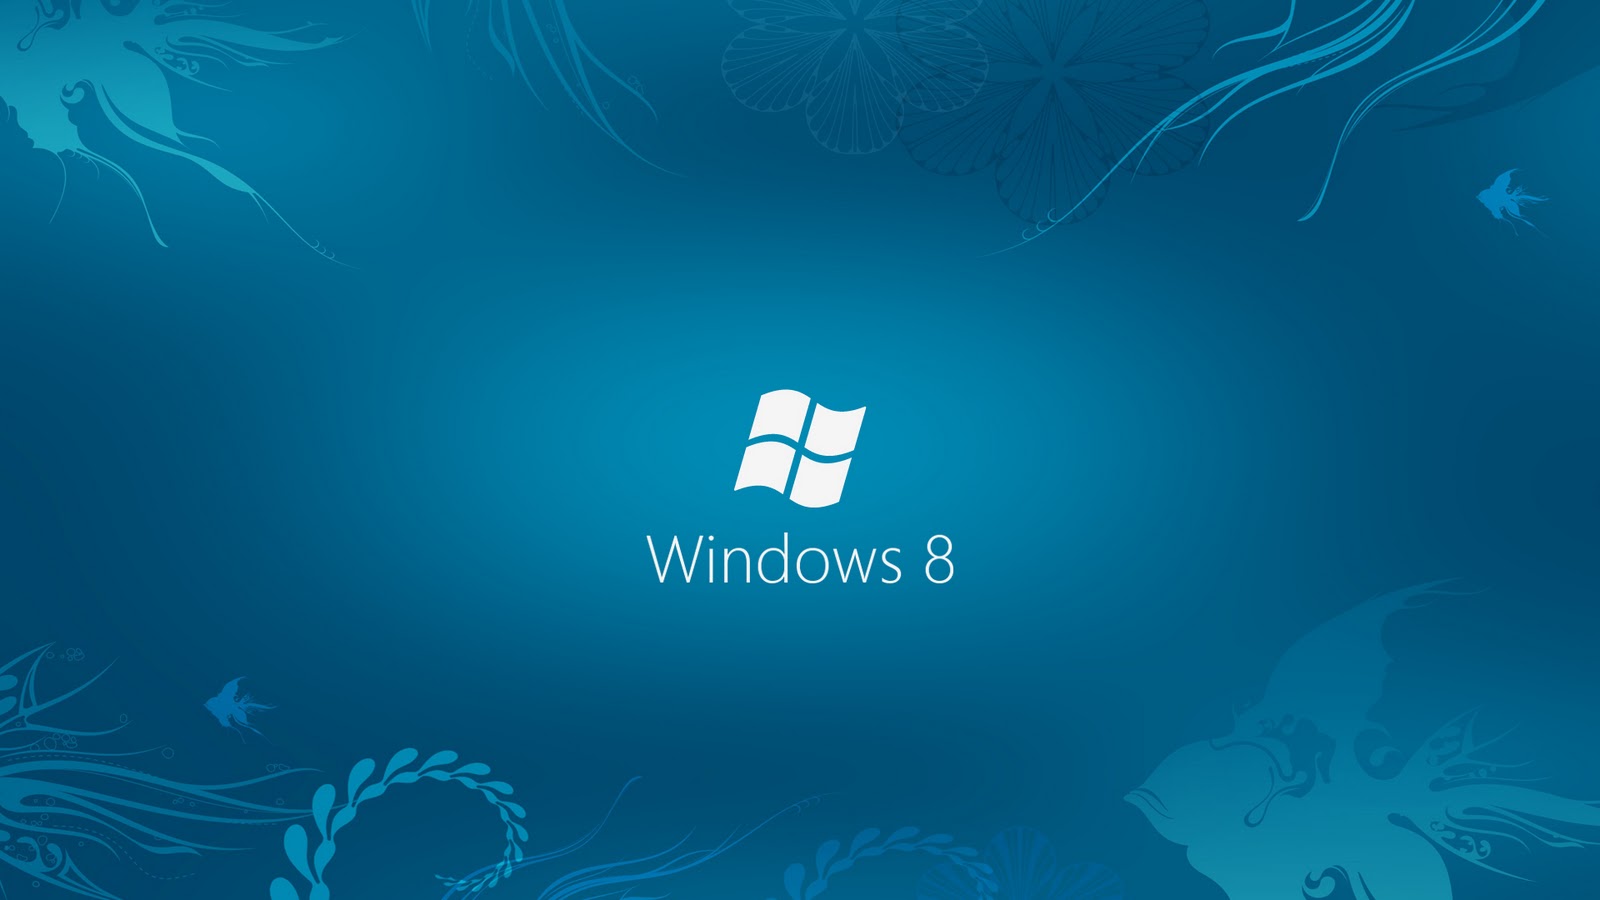 [48+] Wallpaper Windows 7 64 bit | WallpaperSafari.com